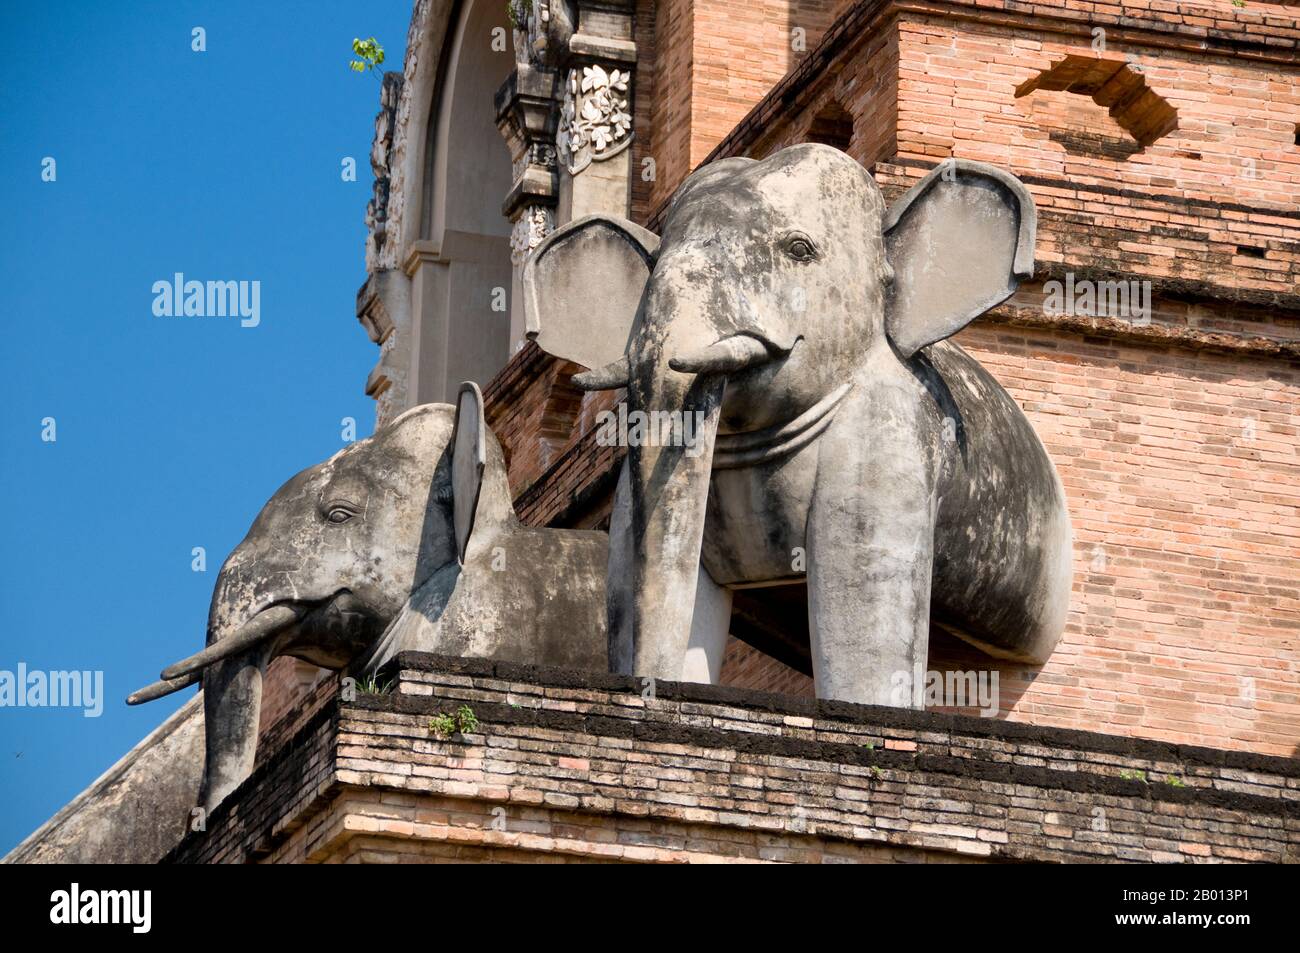 Thailand: Elefanten schmücken den Hauptchedi, Wat Chedi Luang, Chiang Mai. Wat Chedi Luang übersetzt wörtlich aus dem Thailändischen als ‘Kloster der Großen Stupa’. Der Bau des Tempels begann am Ende des 14. Jahrhunderts, als das Königreich Lan Na in seiner Blüte stand. König Saen Muang Ma (1385-1401) beabsichtigte es als Ort eines großen Reliquienschreines, um die Asche seines Vaters, König Ku Na (1355-85), zu vereinigen. Heute ist es der Ort der Lak Muang oder Stadtsäule. Die jährliche Inthakin-Zeremonie findet innerhalb der Grenzen des Tempels statt. Stockfoto